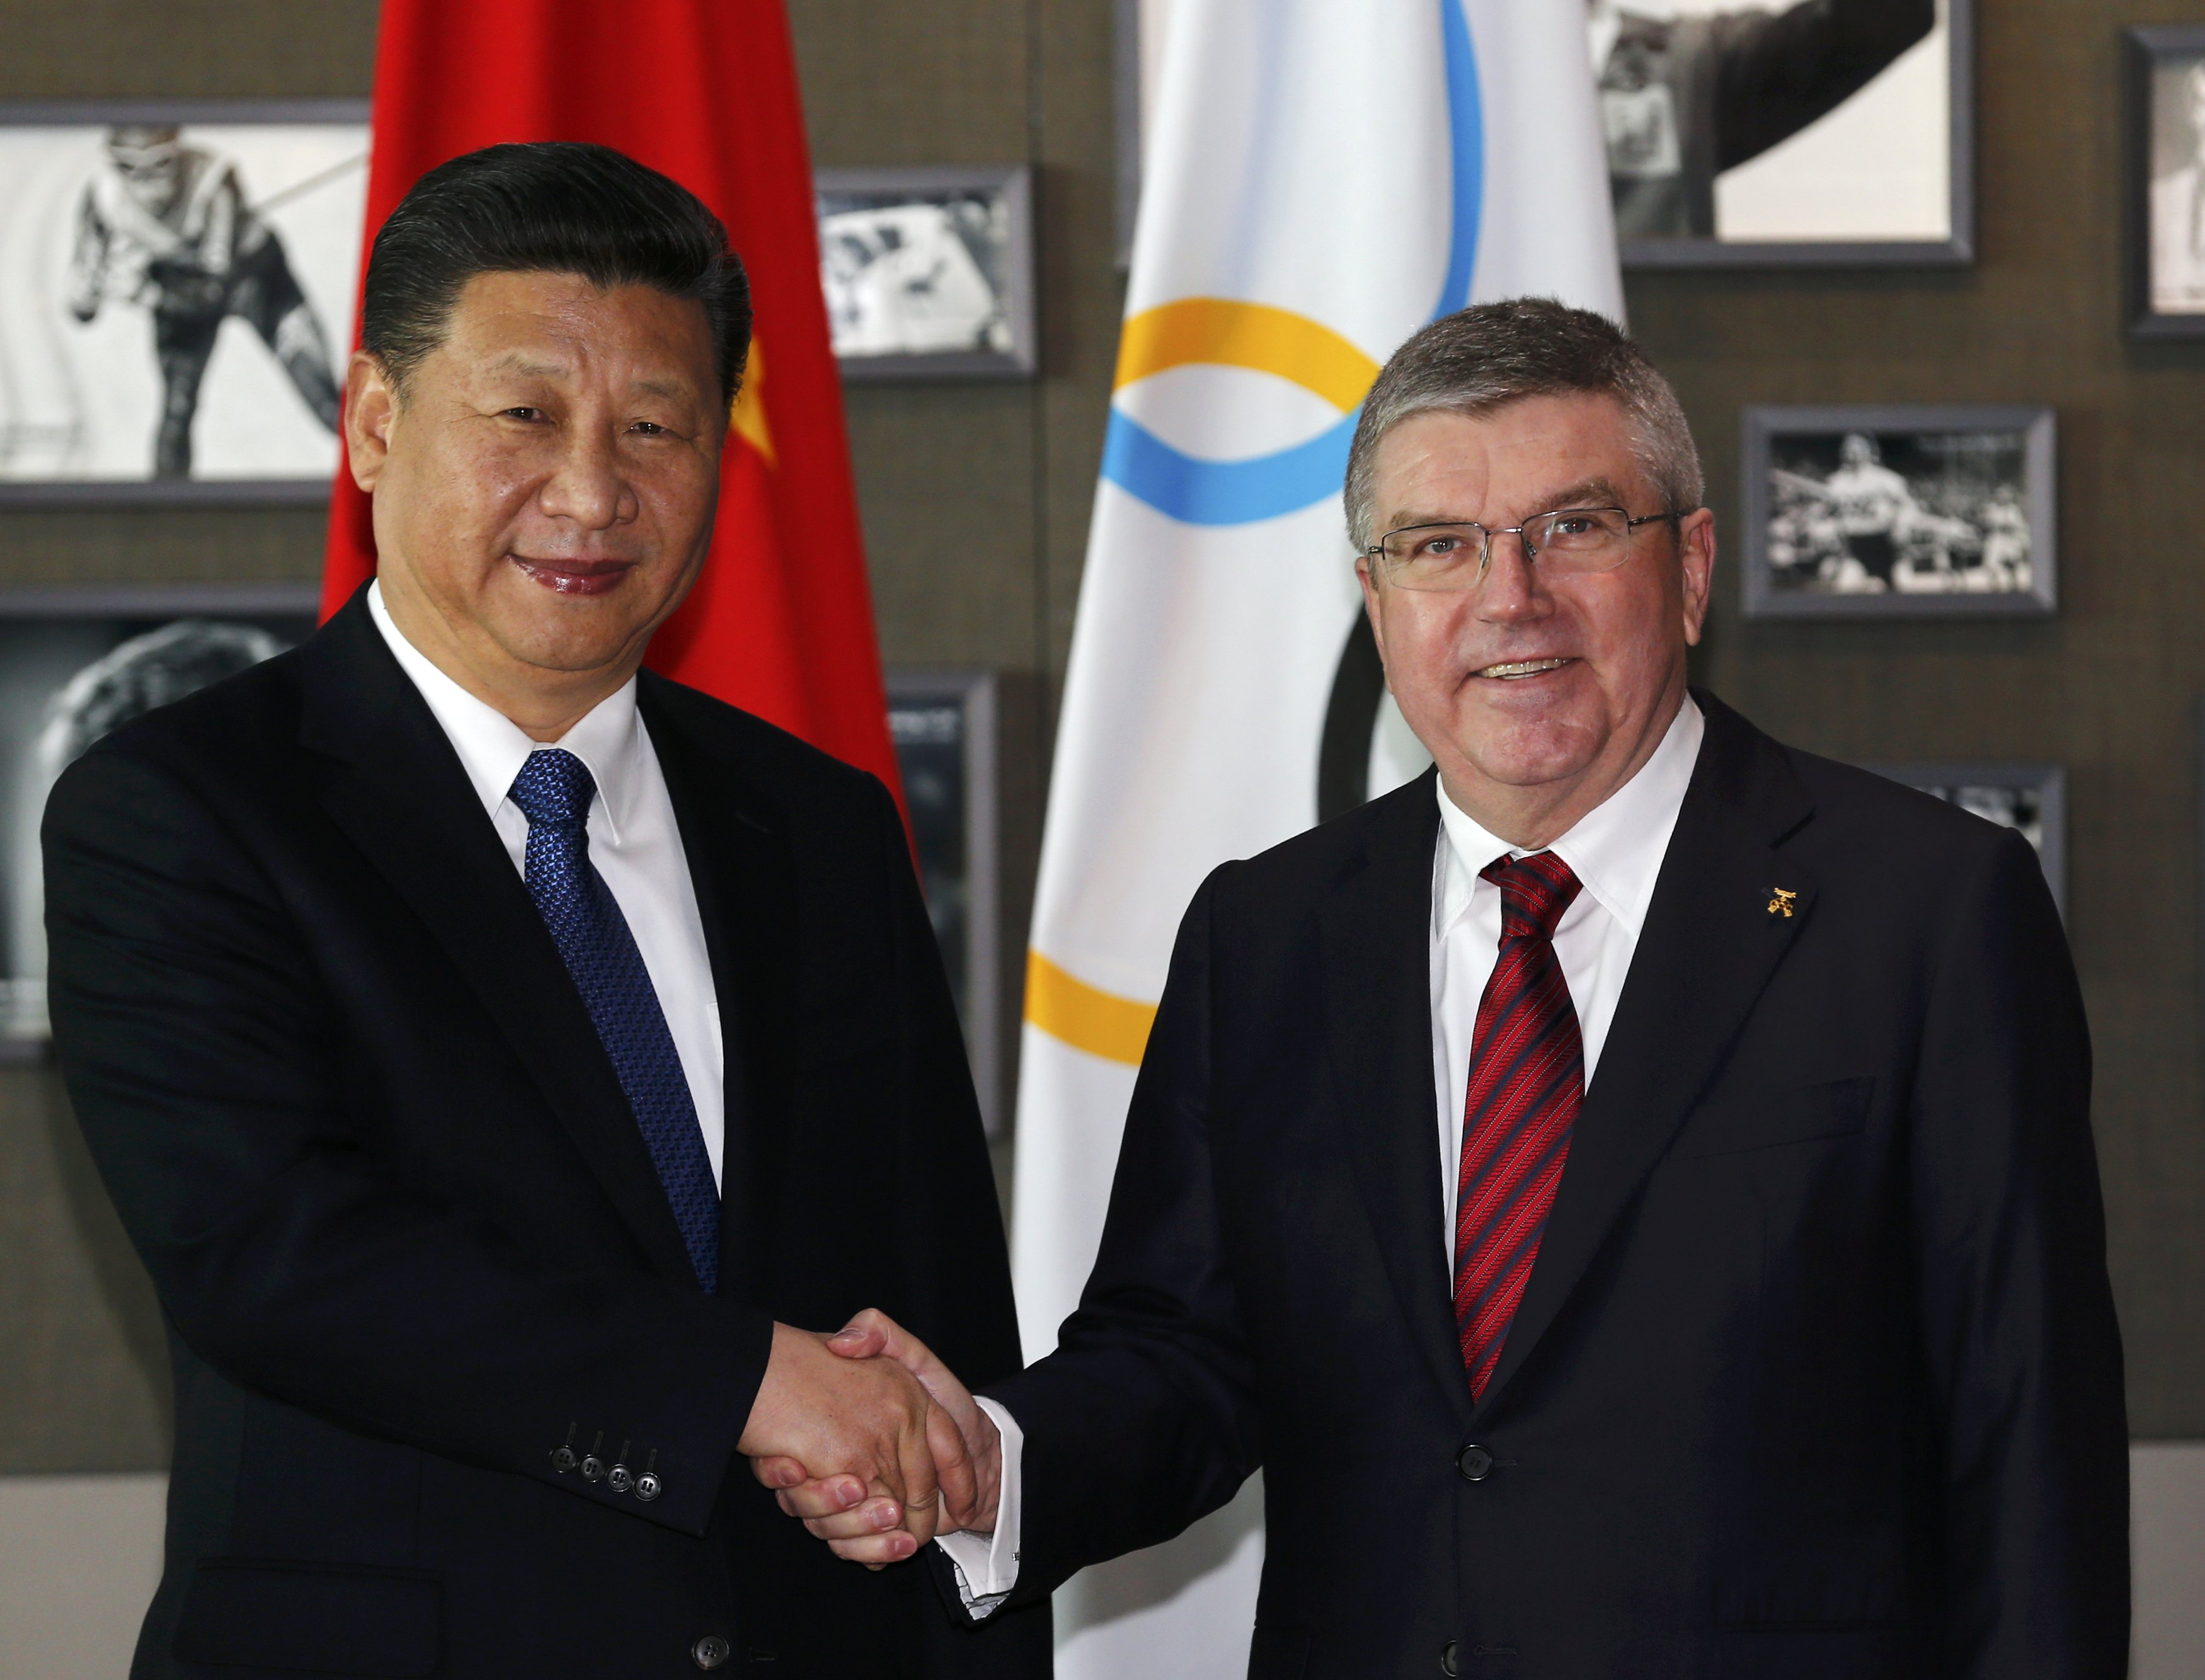 صورة تذكارية للرئيس الصينى مع رئيس اللجنة الأوليمبية الدولية فى سويسرا